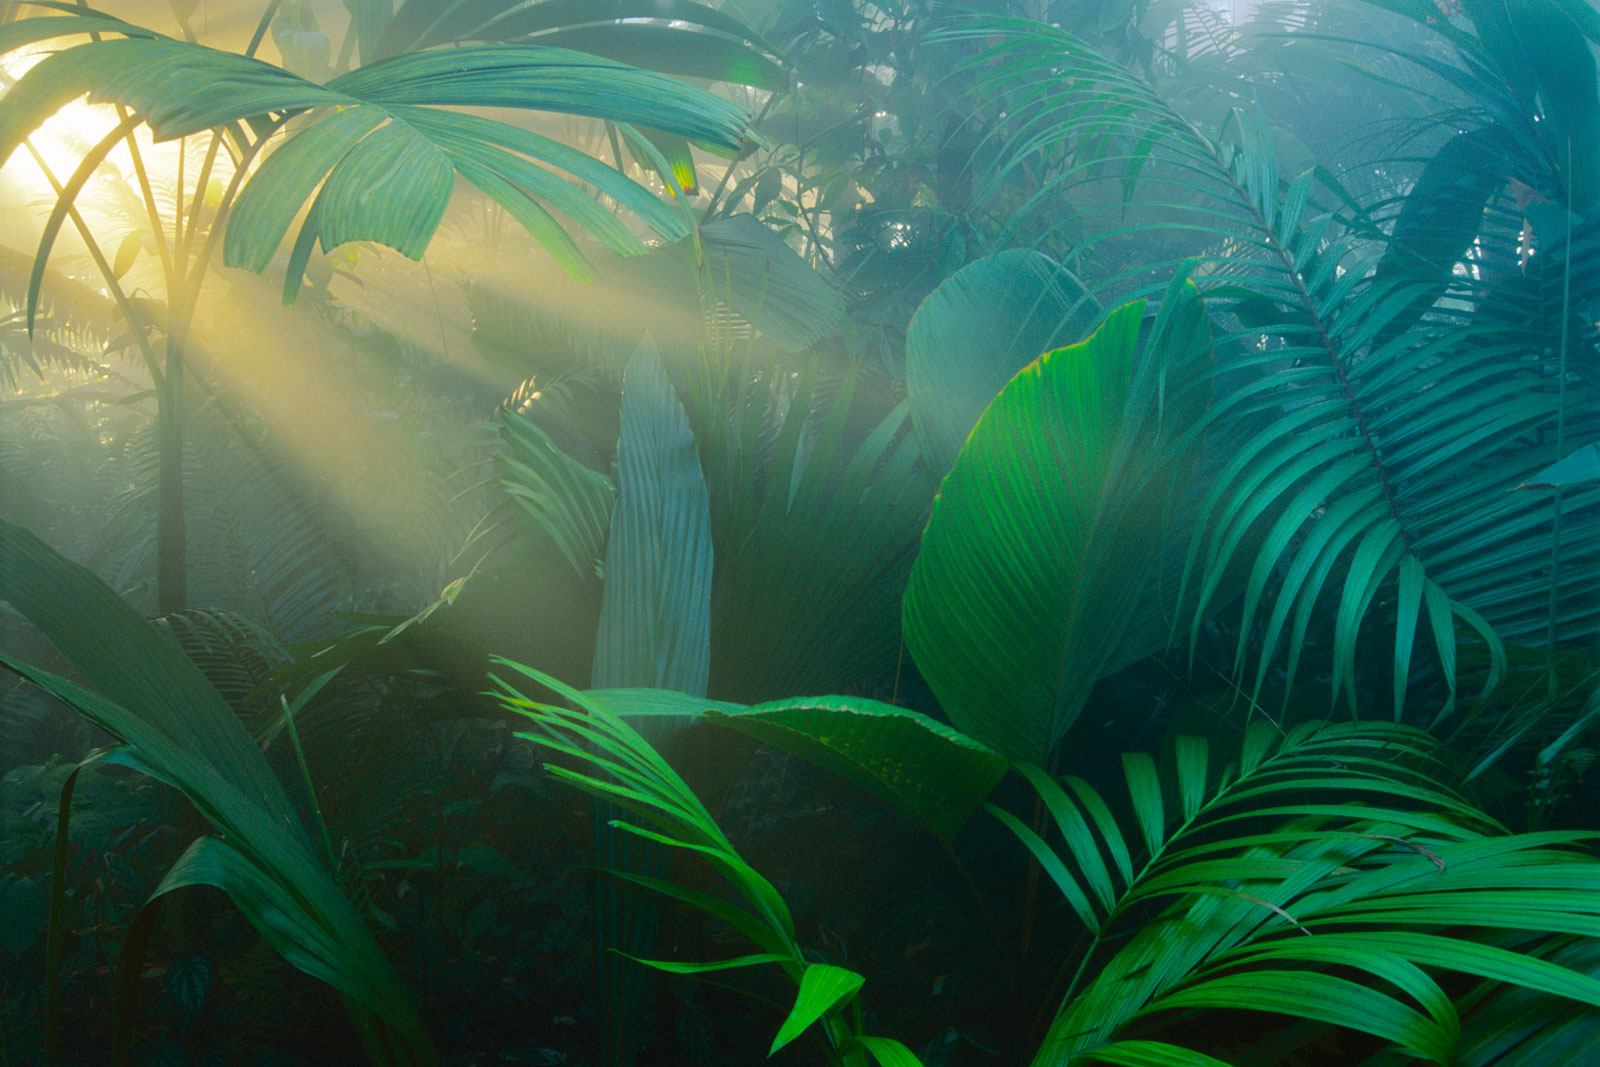 Rainforest vegetation in morning light